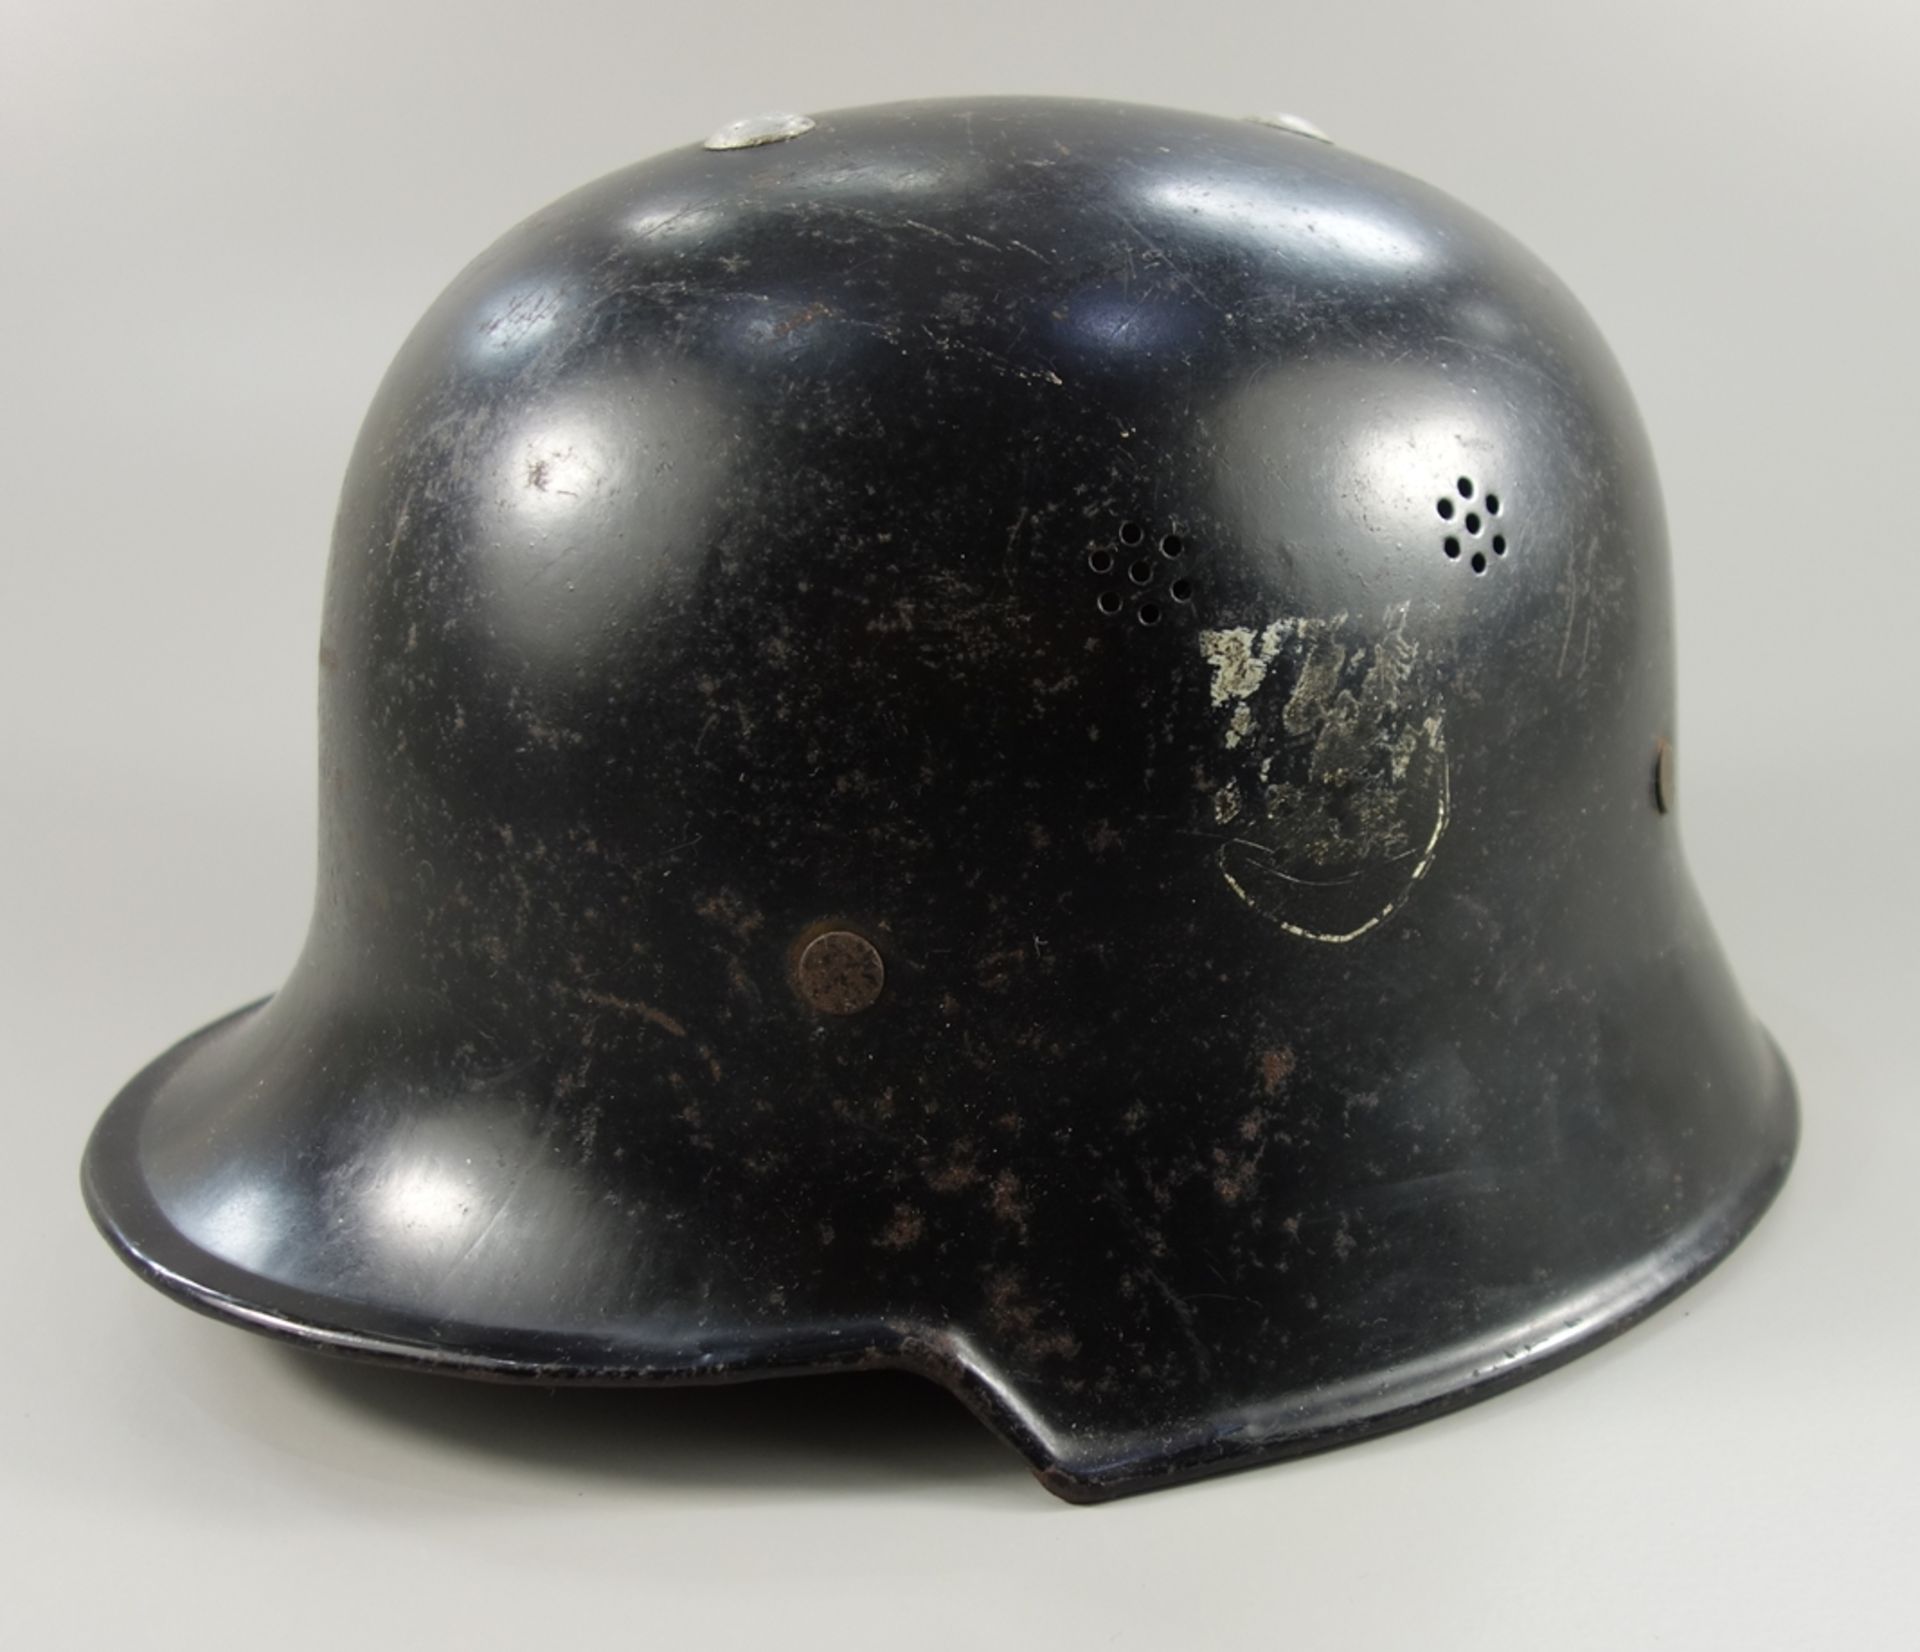 Feuerwehrhelm, M34, Ausführung 1936, WK II, Gr.55, schwarz lackierter Helm aus Aluminium, - Bild 2 aus 3